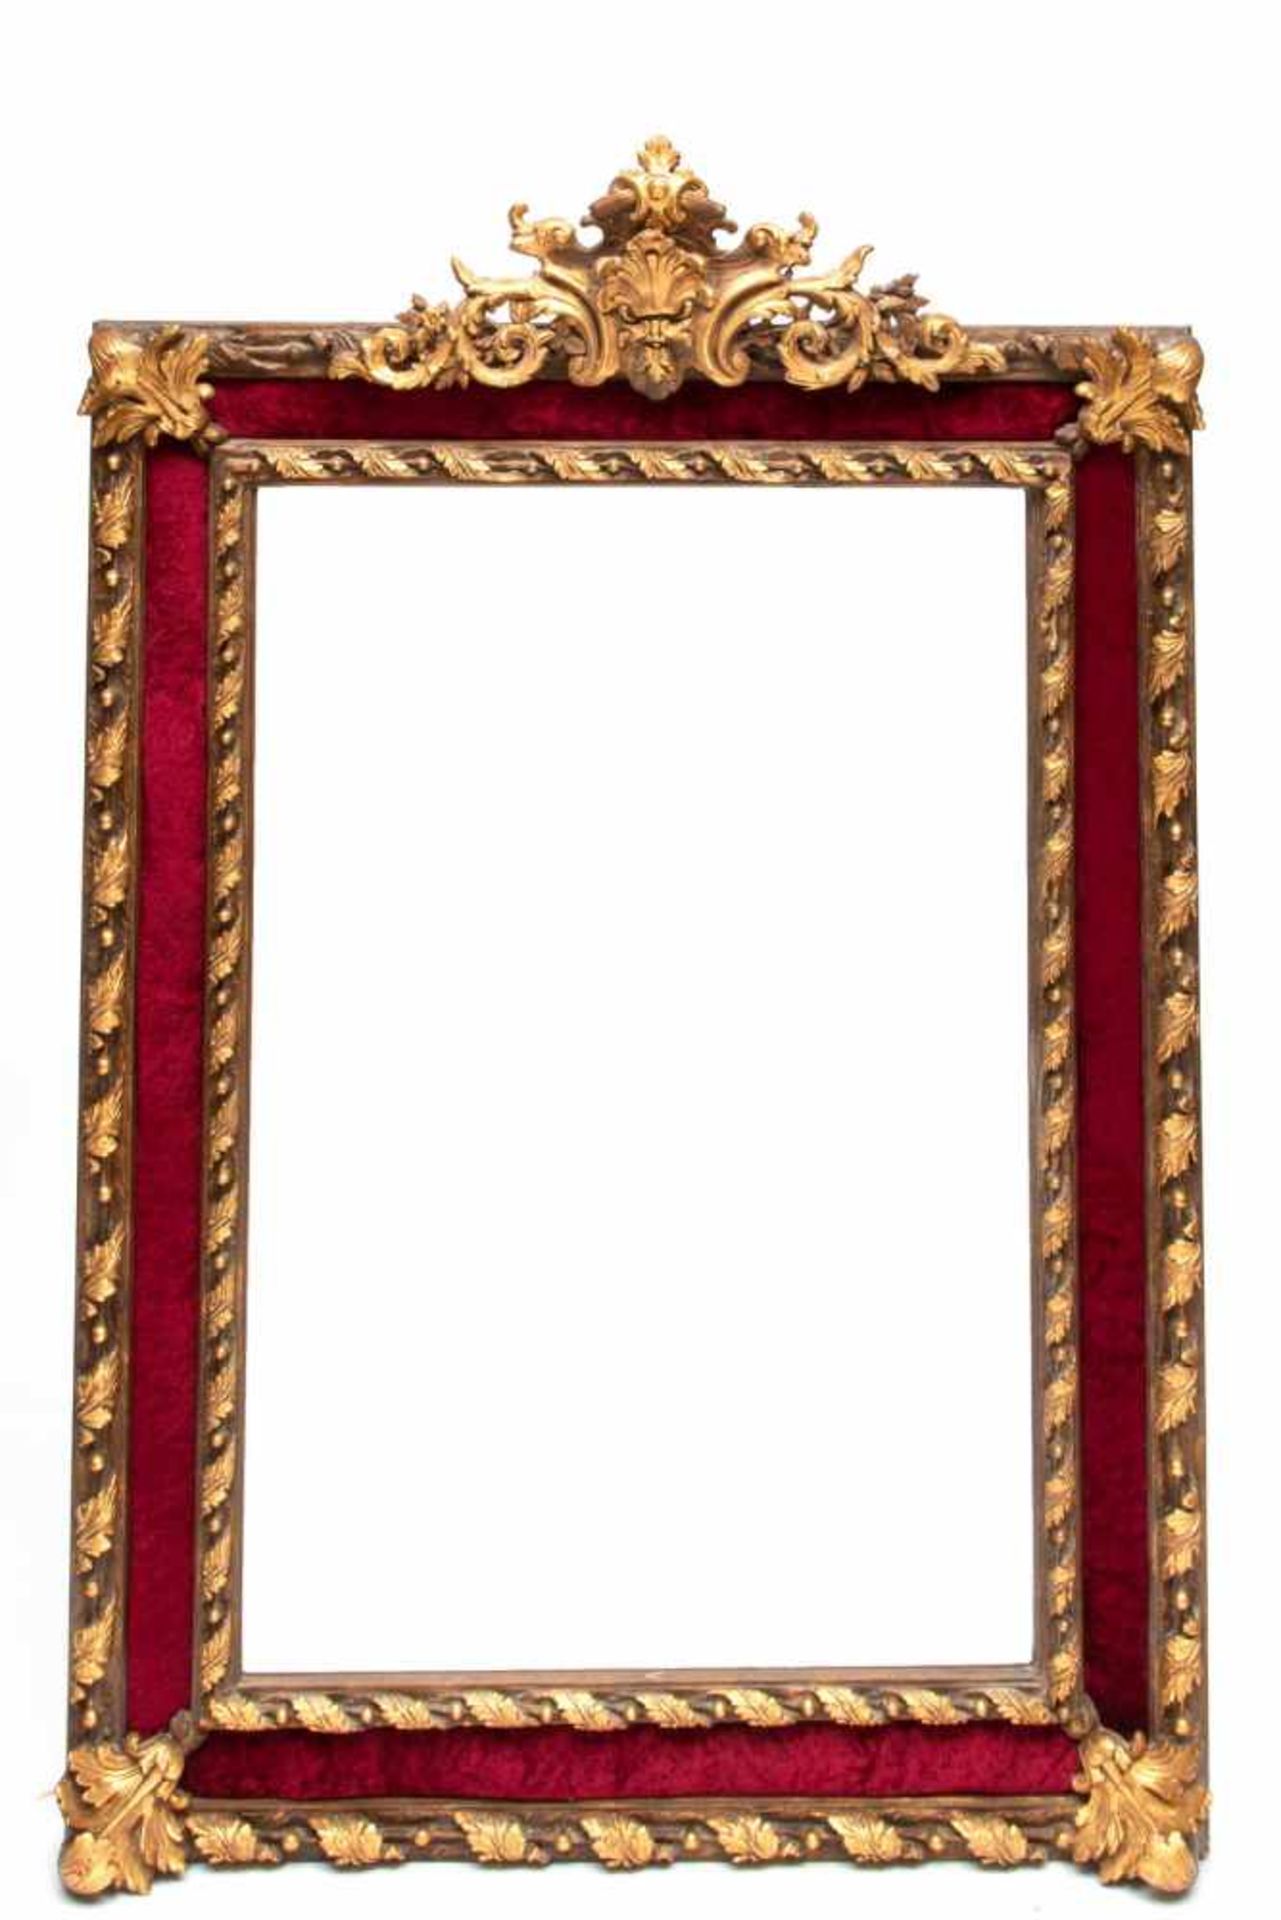 Paar kapitale rechthoekige gefacetteerde spiegels in vergulde lijst deels bekleed met rode velours - Image 2 of 2